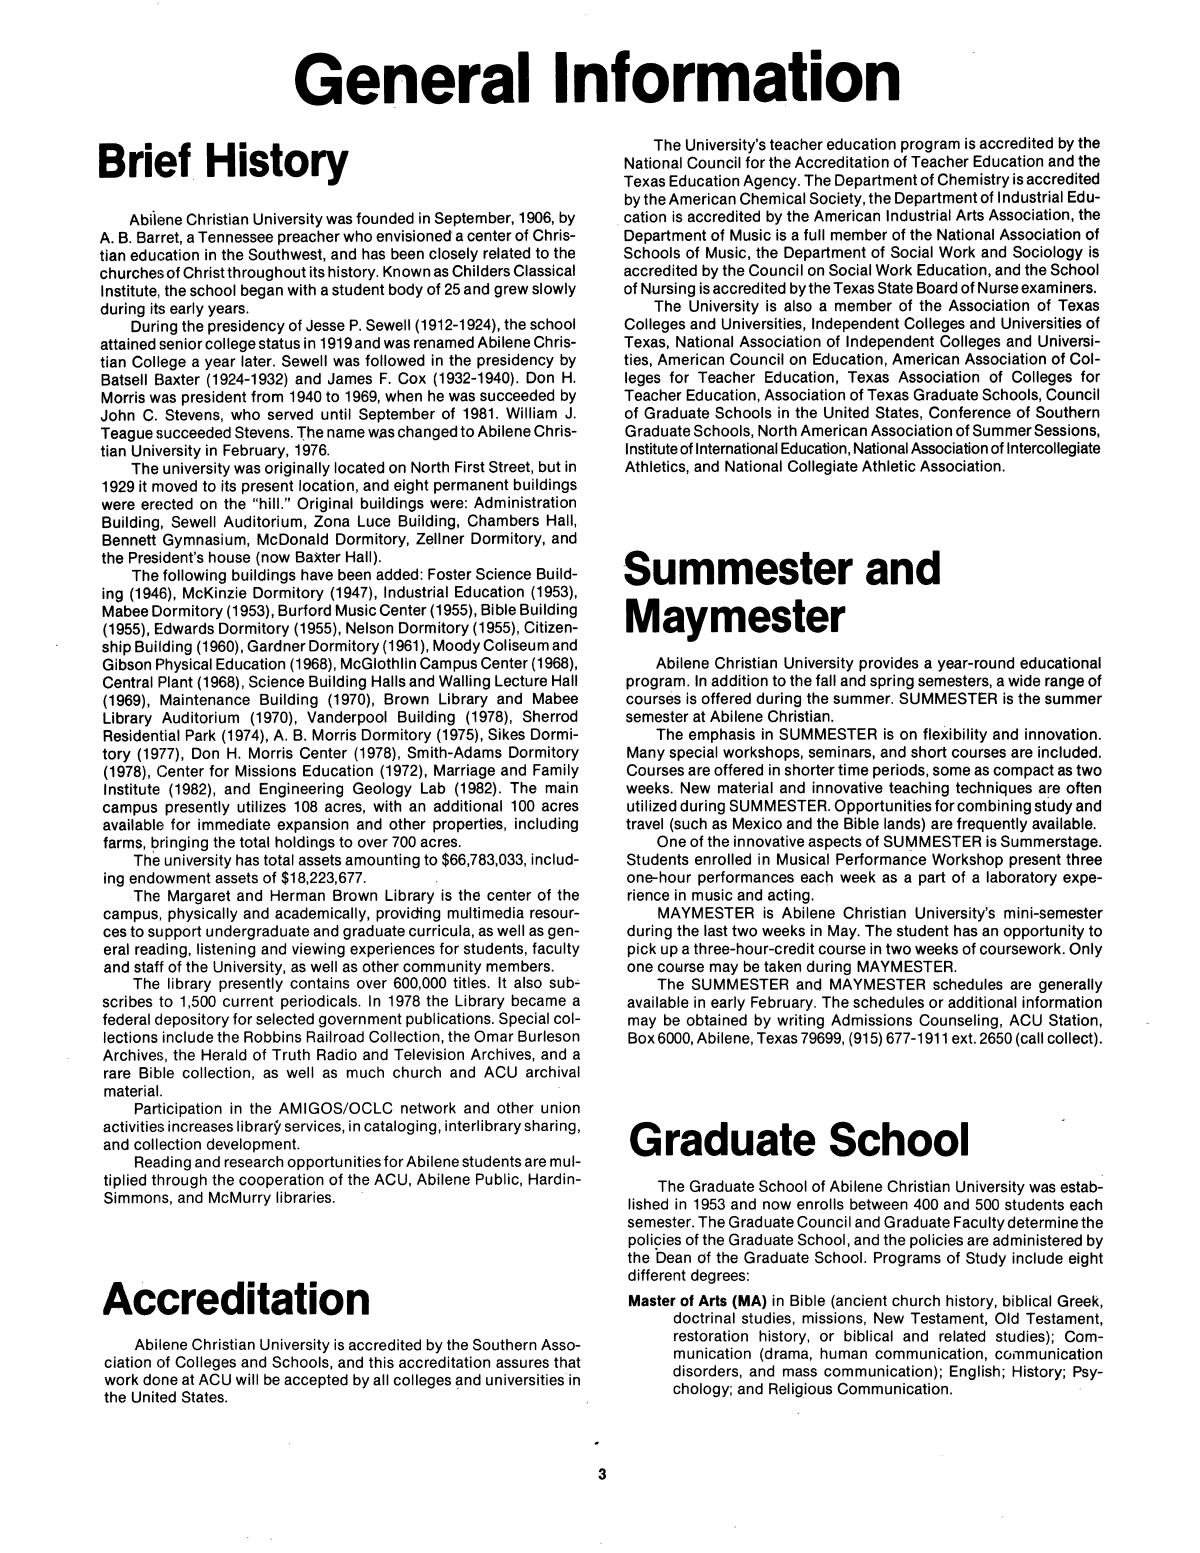 Catalog of Abilene Christian University, 1983-1984
                                                
                                                    3
                                                